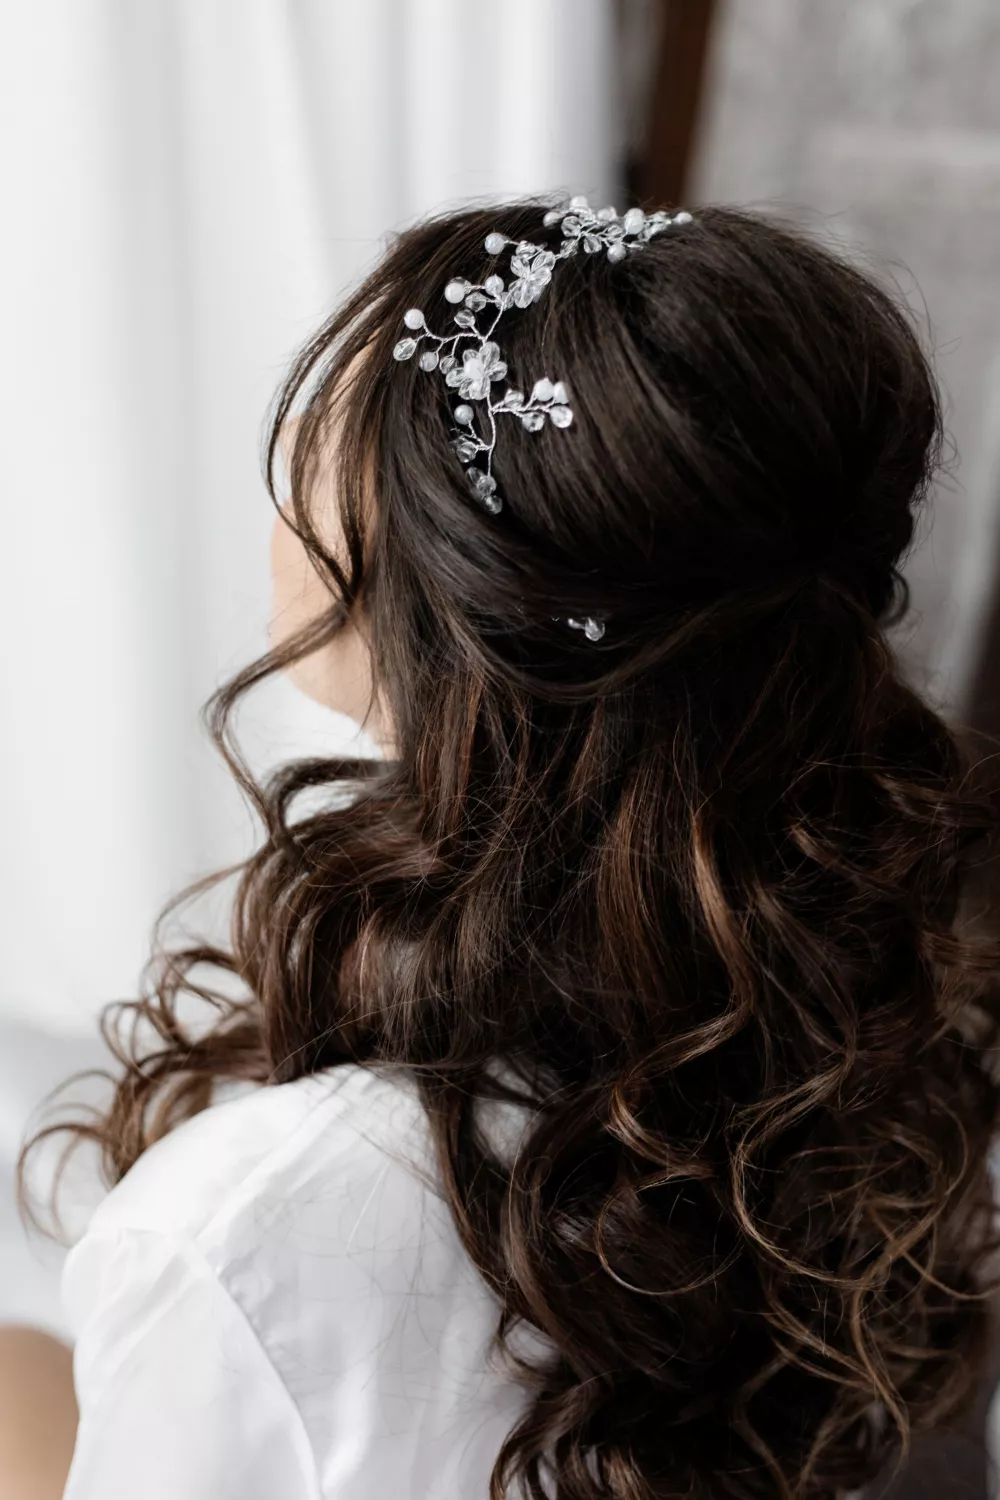 公主頭造型一直是許多新娘的送客髮型名單中的TOP1造型。